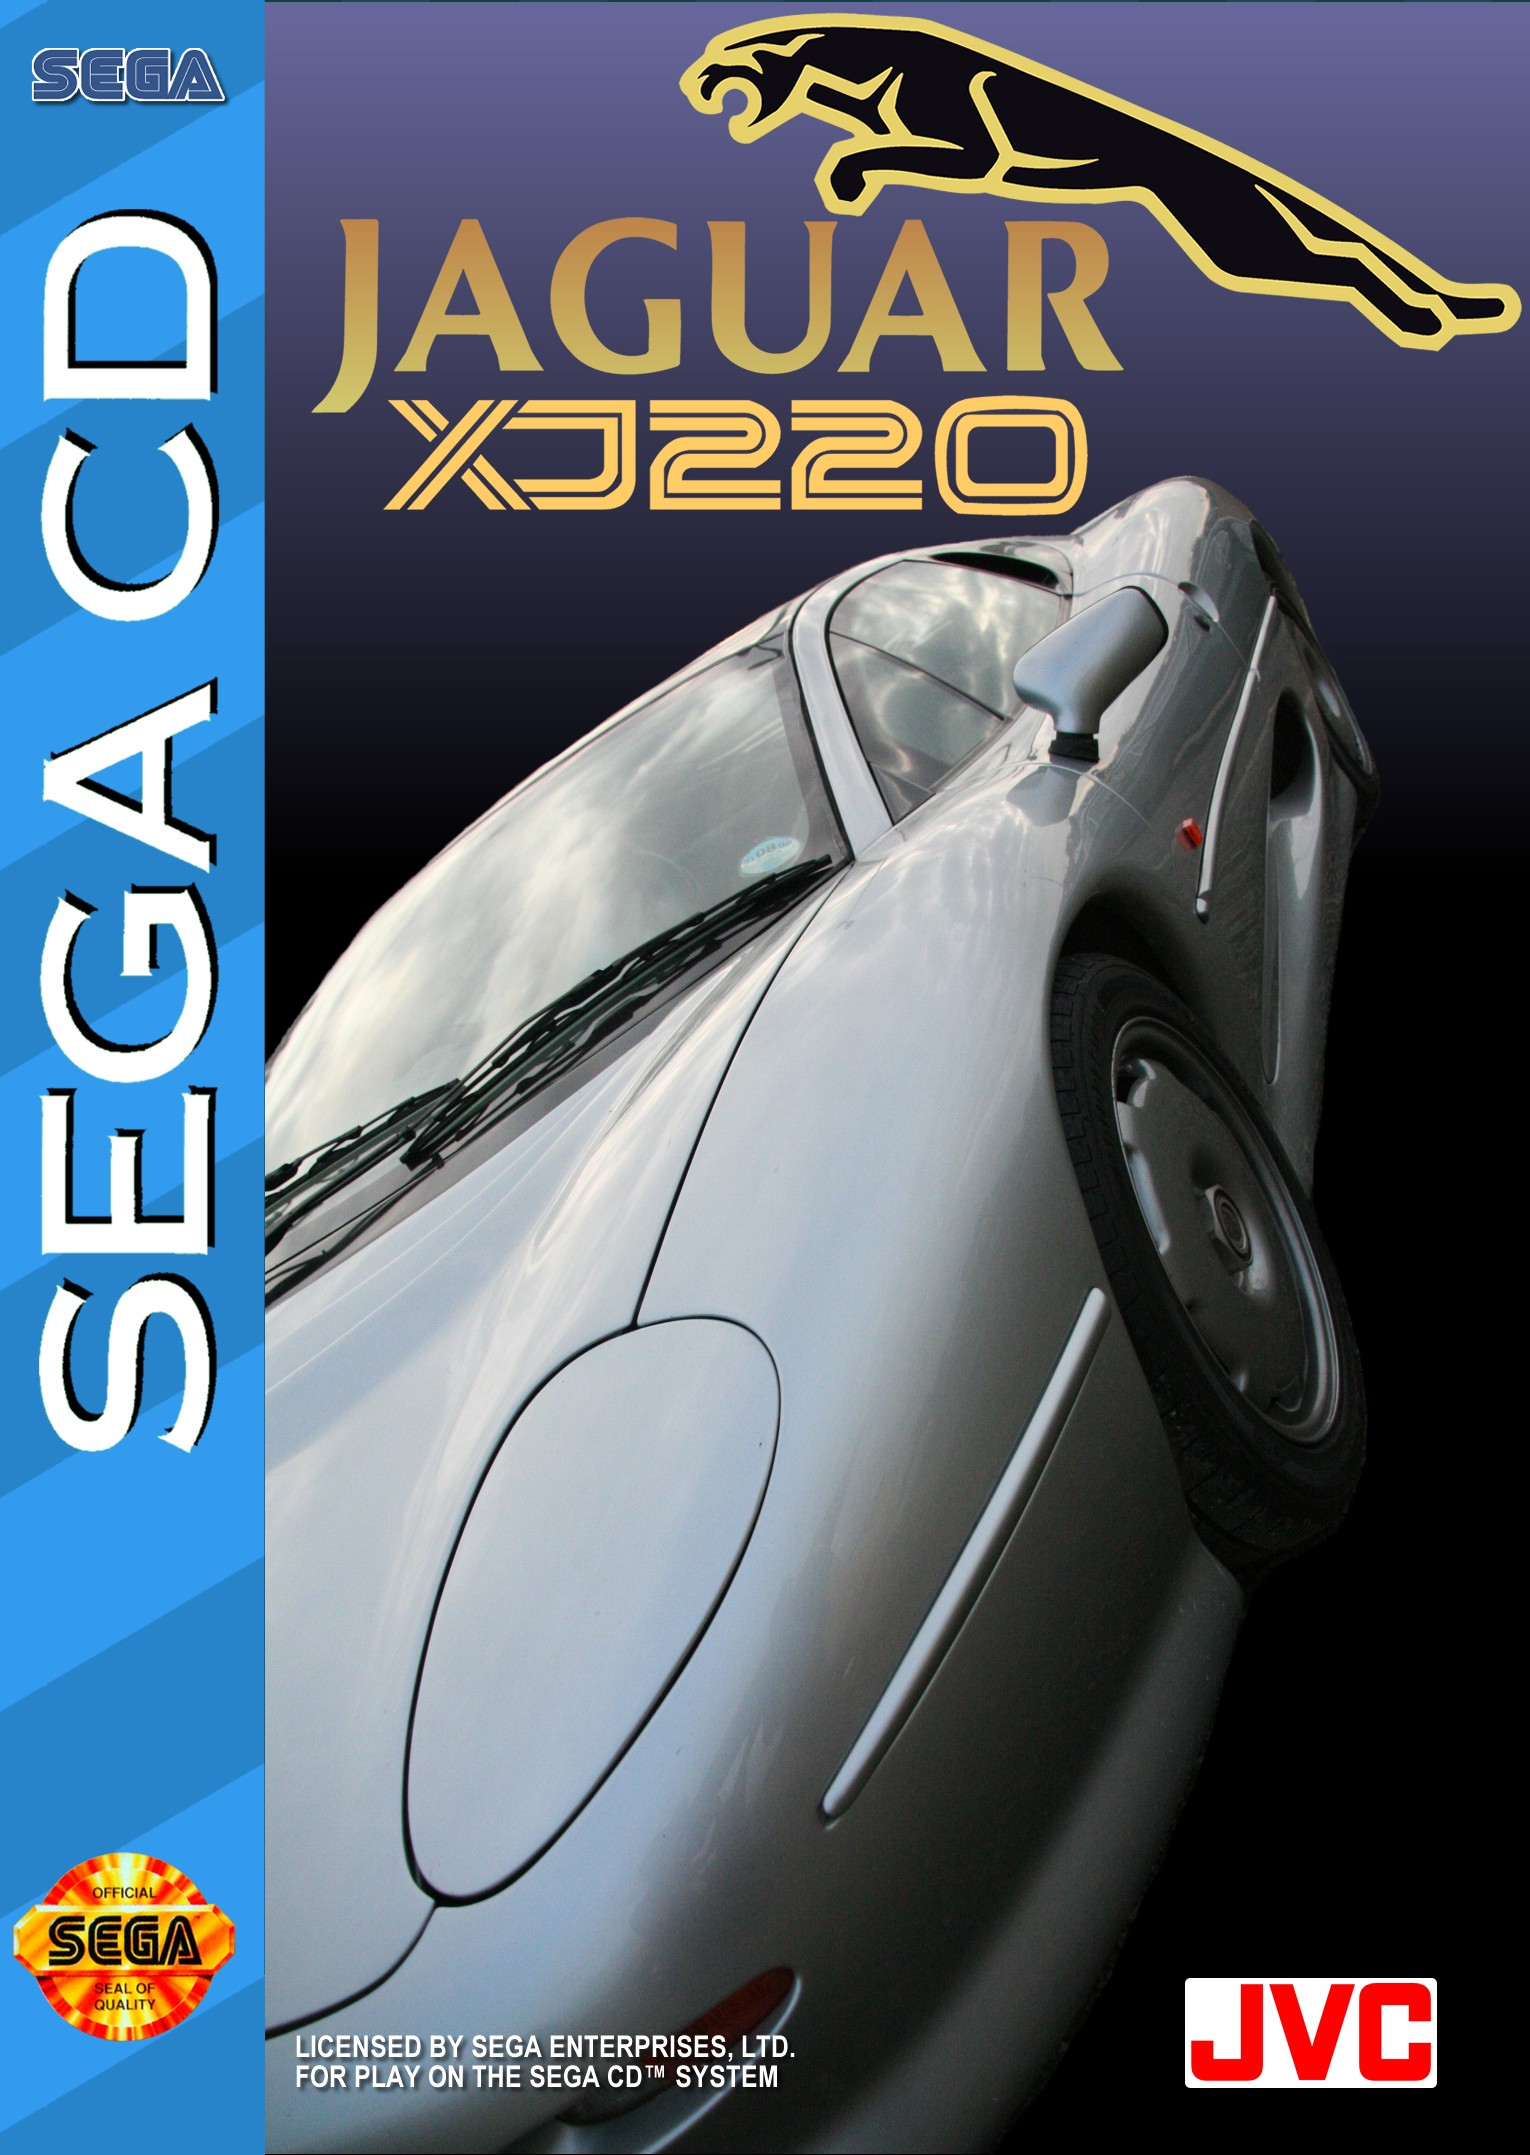 'Jaguar XJ220'